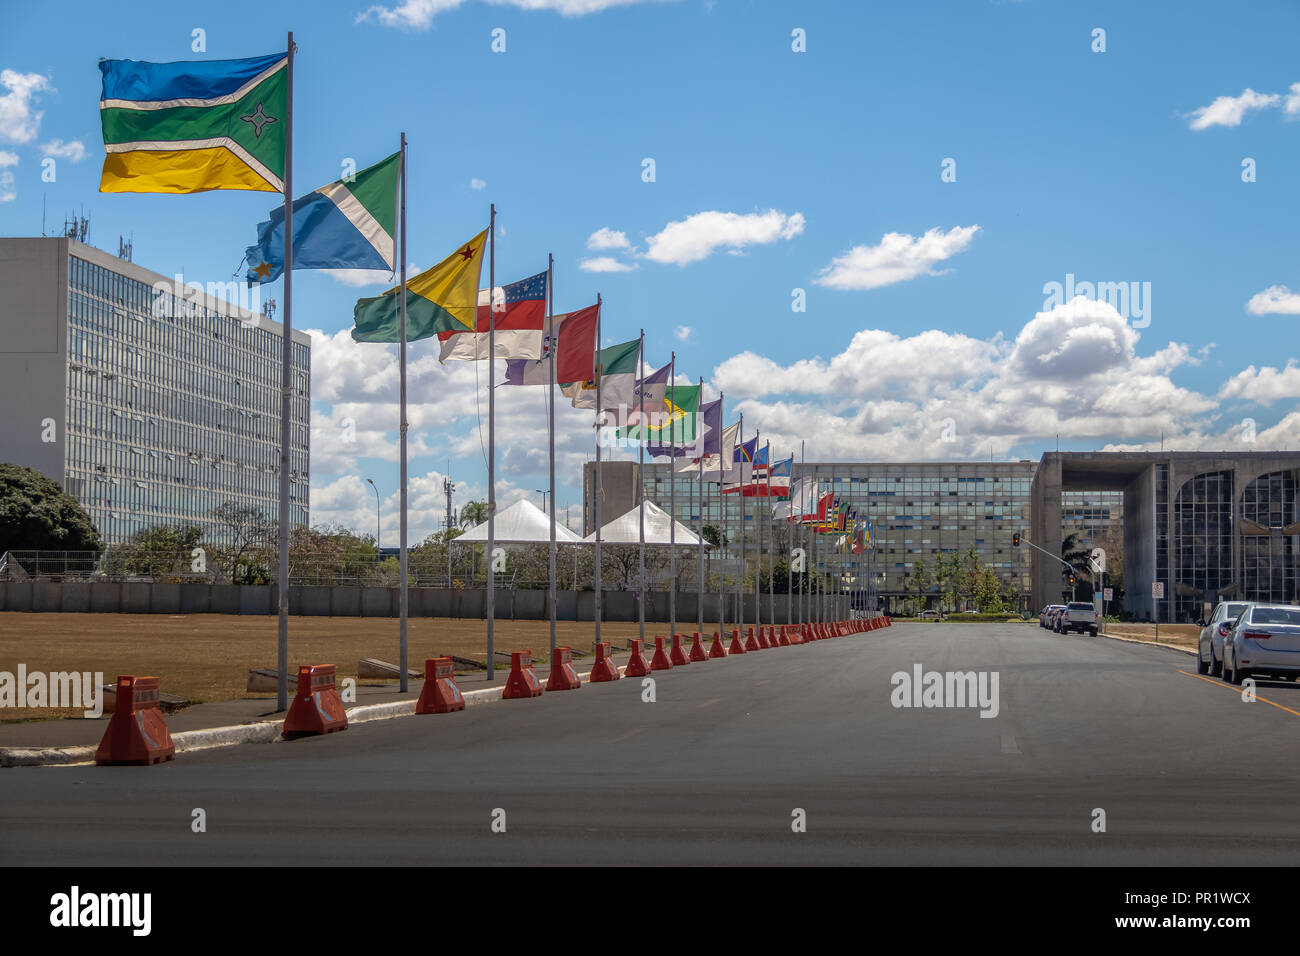 Los Estados Lane (Alameda dos Estados) - Brasilia, Distrito Federal, Brasil Foto de stock